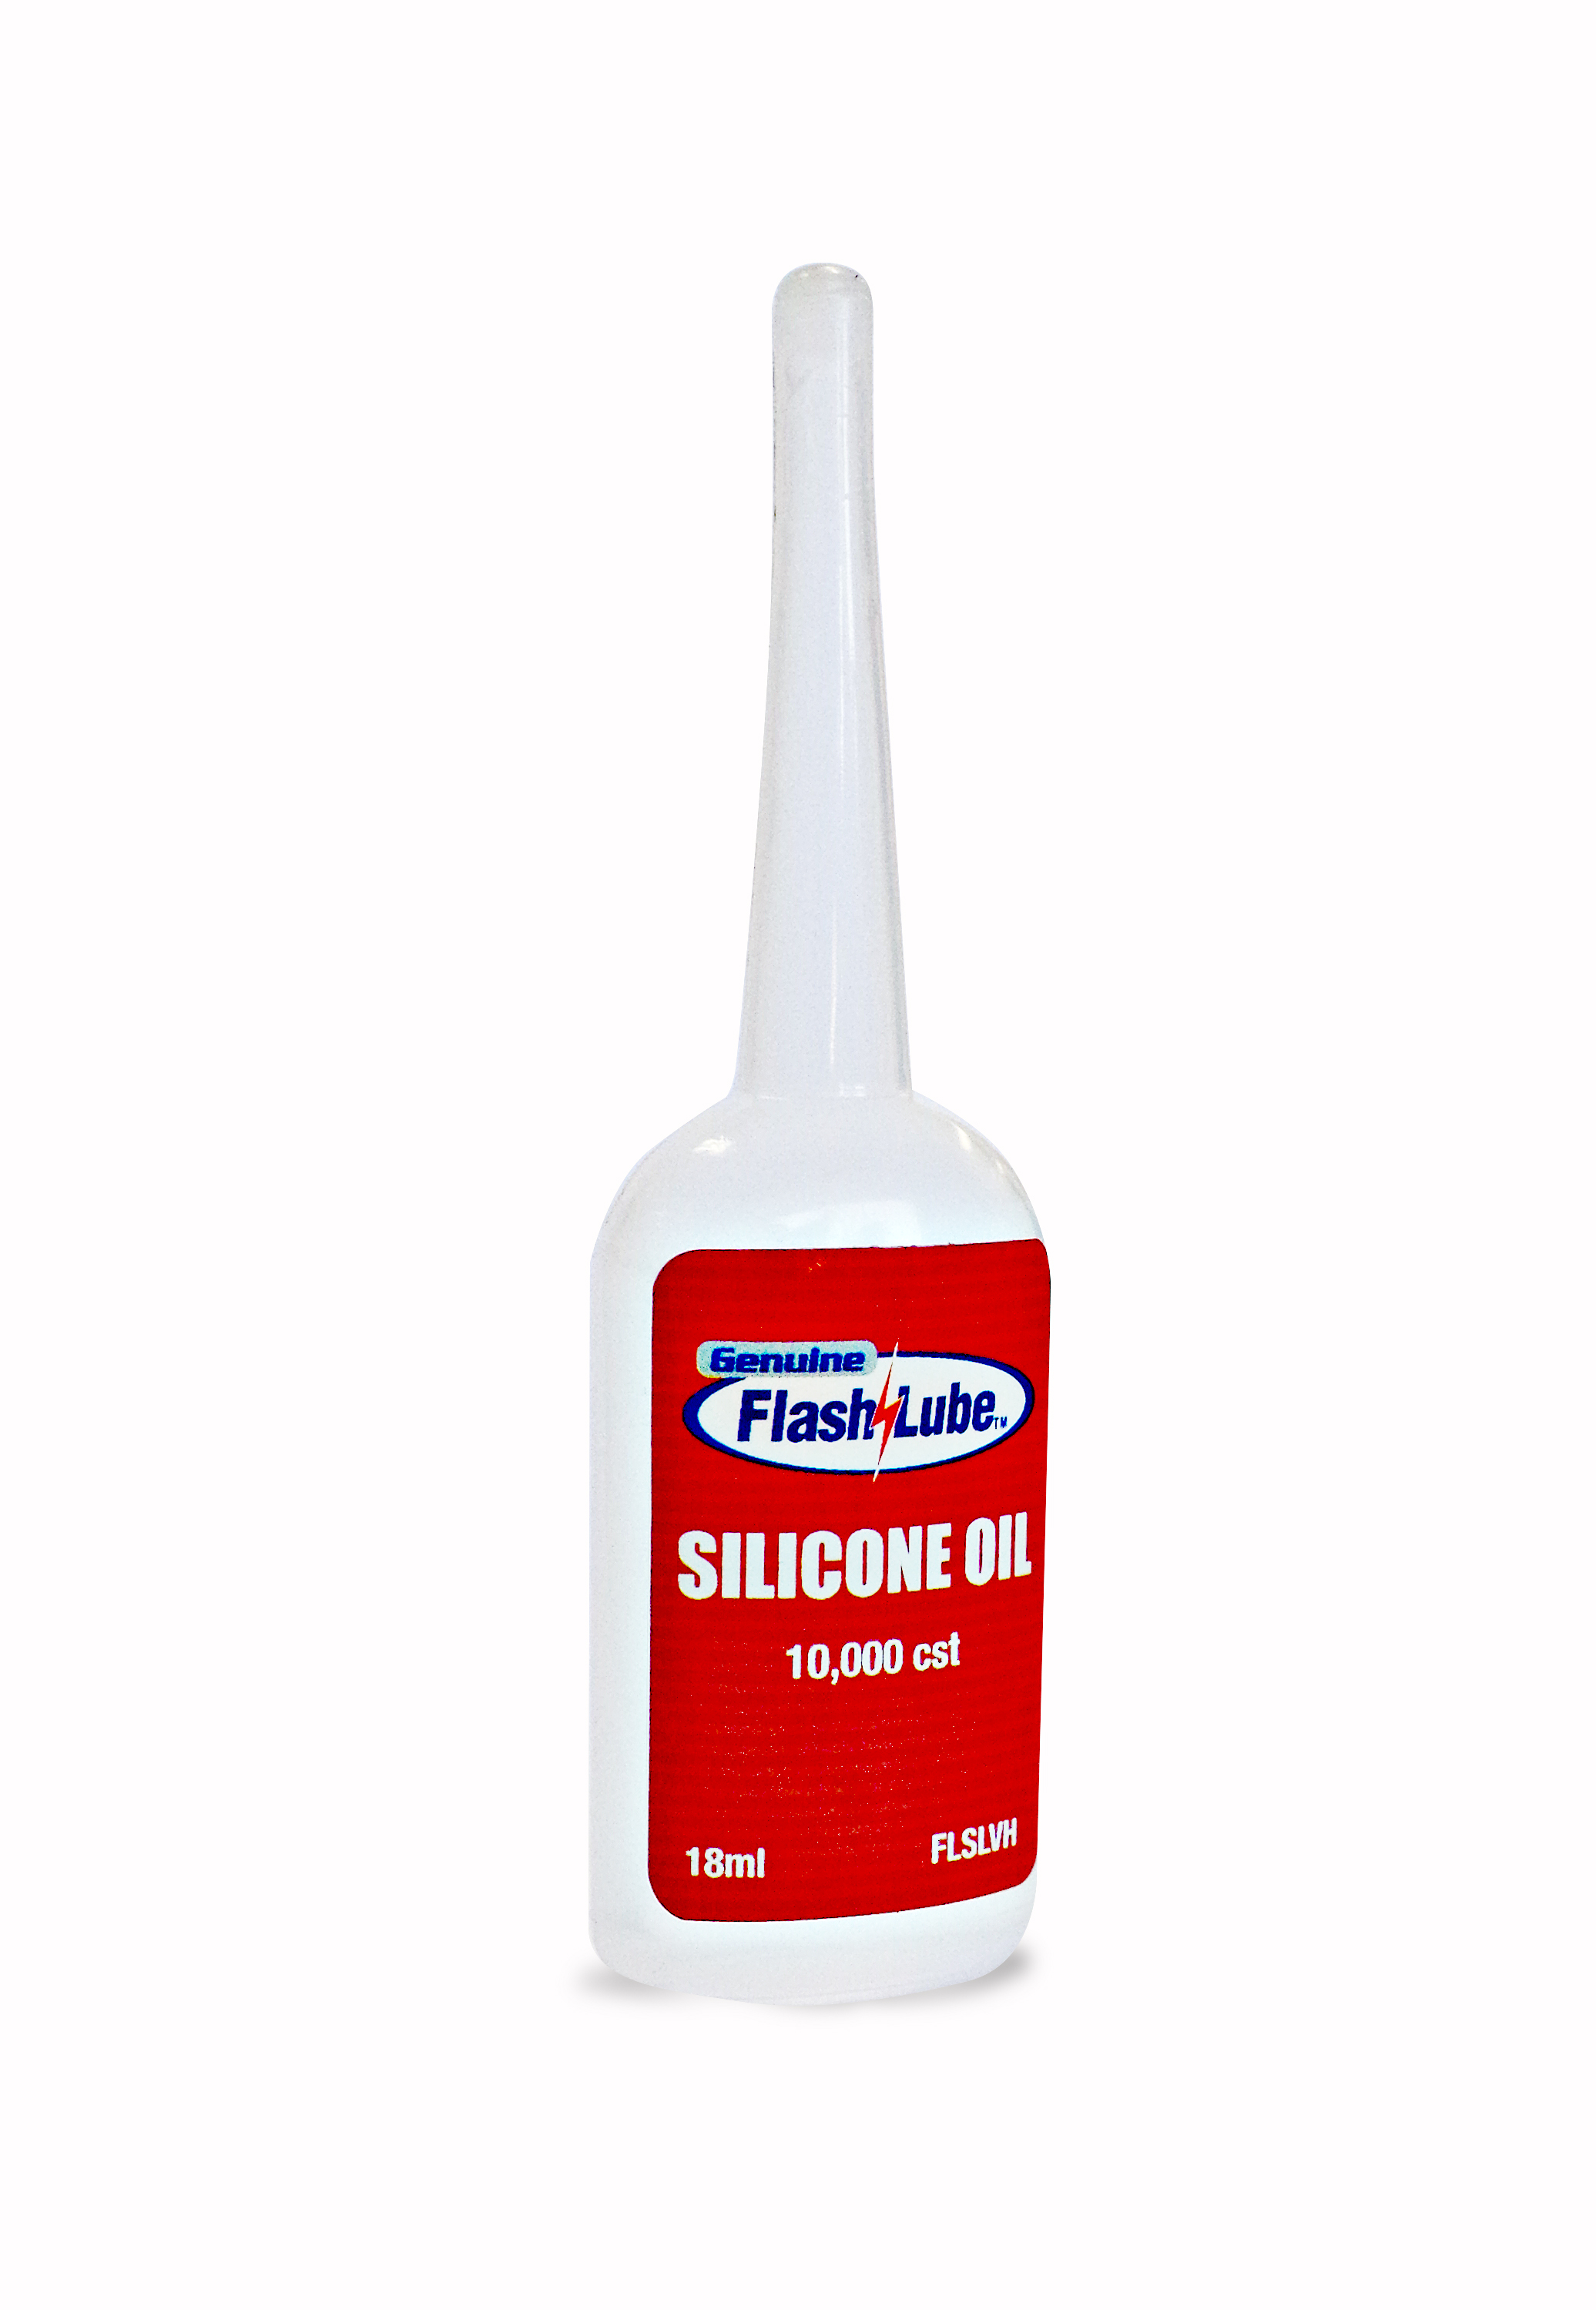 Flashlube Silicone Oil